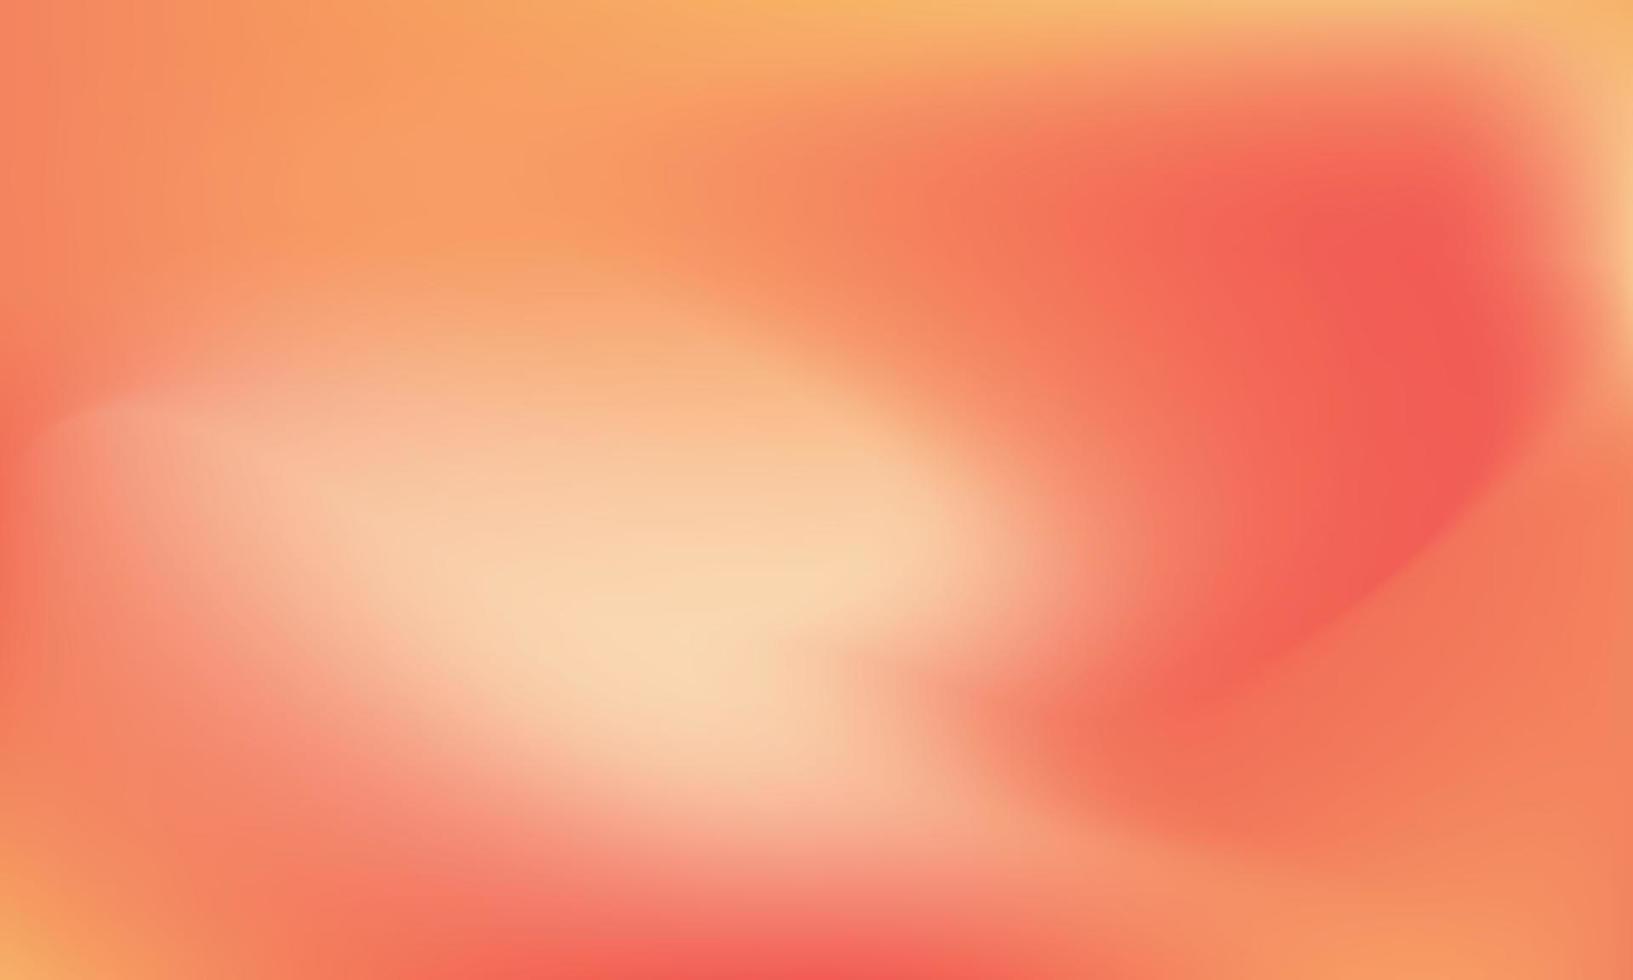 abstrakt suddig röd, gul, violett trendig lutning linjär bakgrund. sömlös modern horisontell design grafisk för mobil app, baner, affisch, landning sida, webbdesign, omslag, affisch, kort, ui vektor